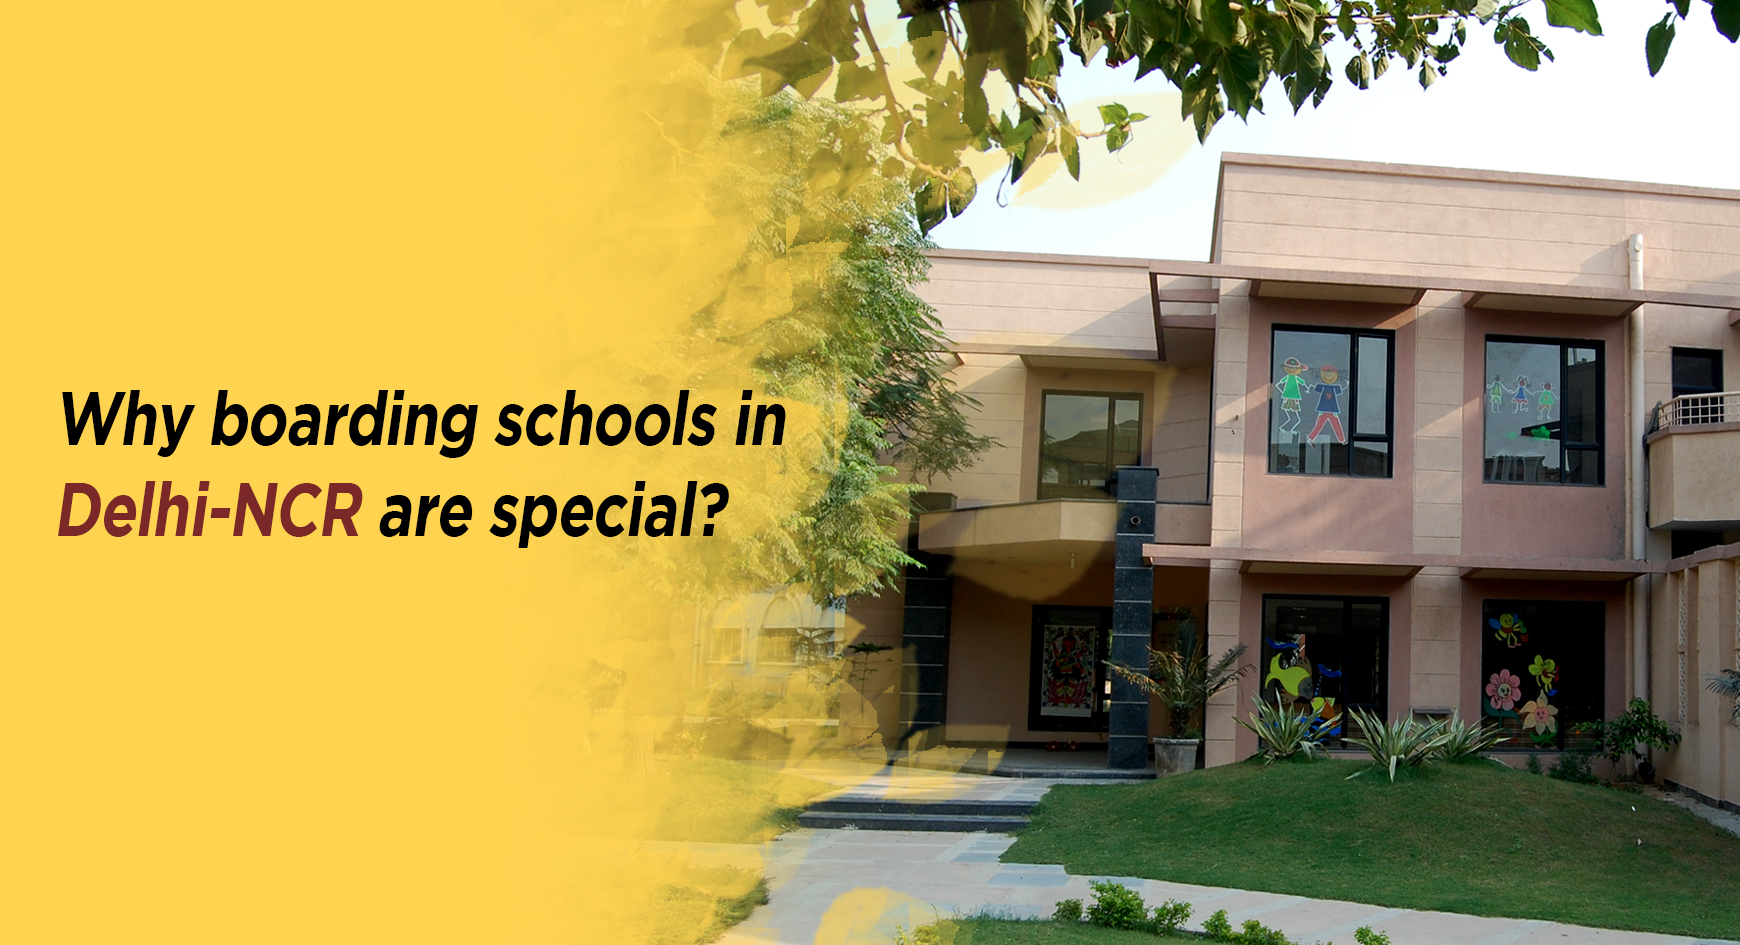 Why boarding schools in Delhi-NCR are special?